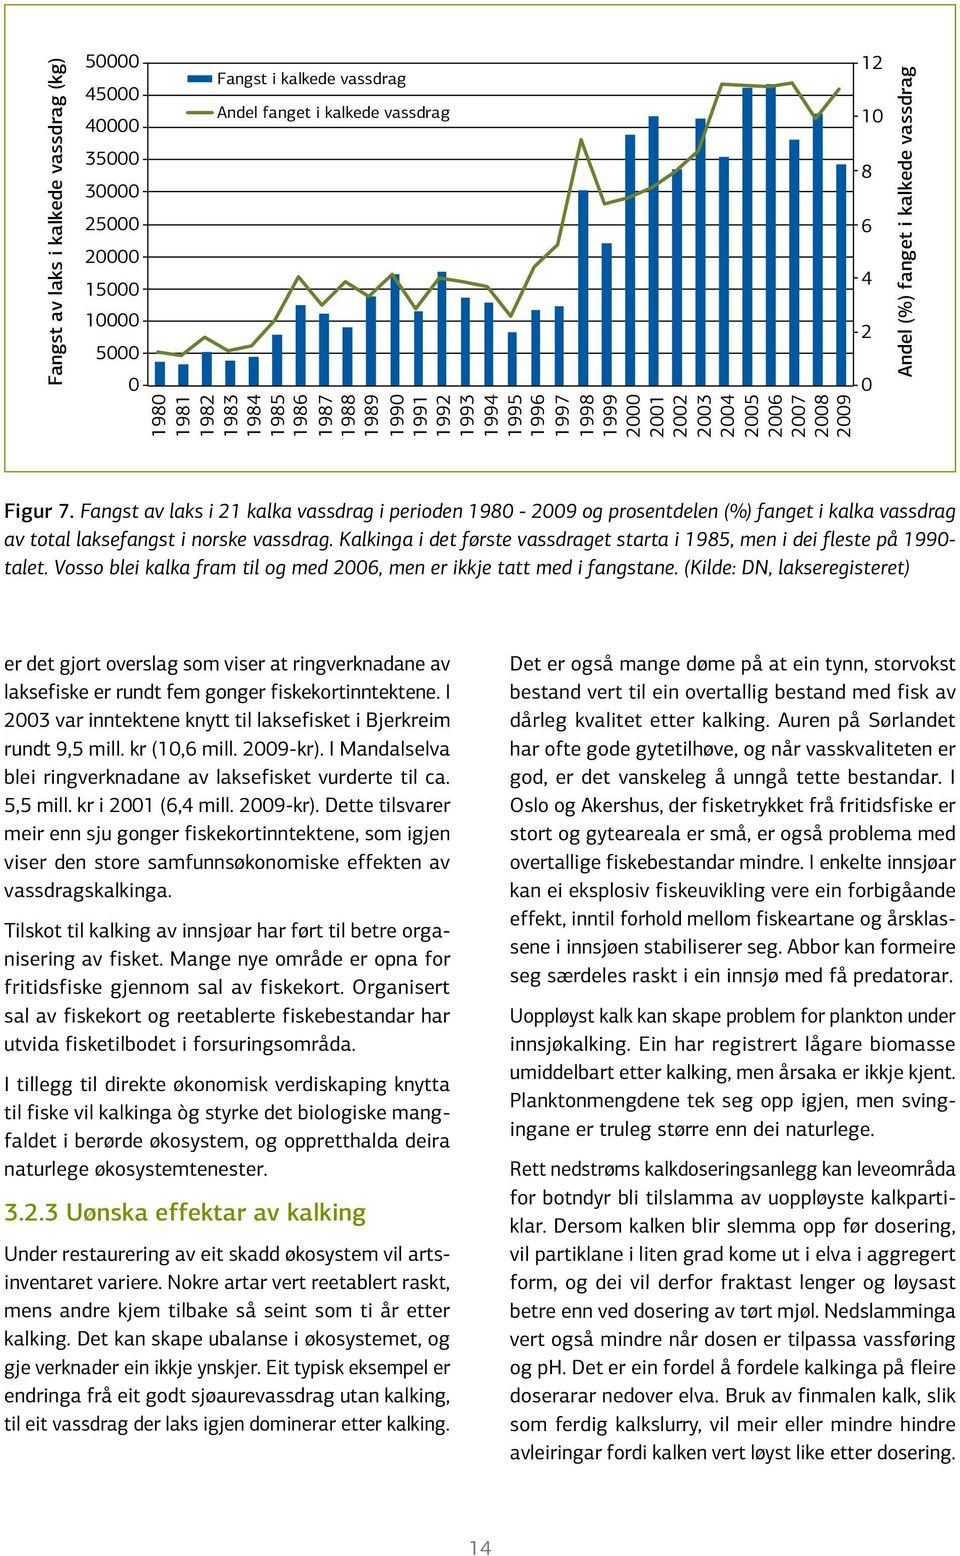 Fangst av laks i 21 kalka vassdrag i perioden 1980-2009 og prosentdelen (%) fanget i kalka vassdrag av total laksefangst i norske vassdrag.